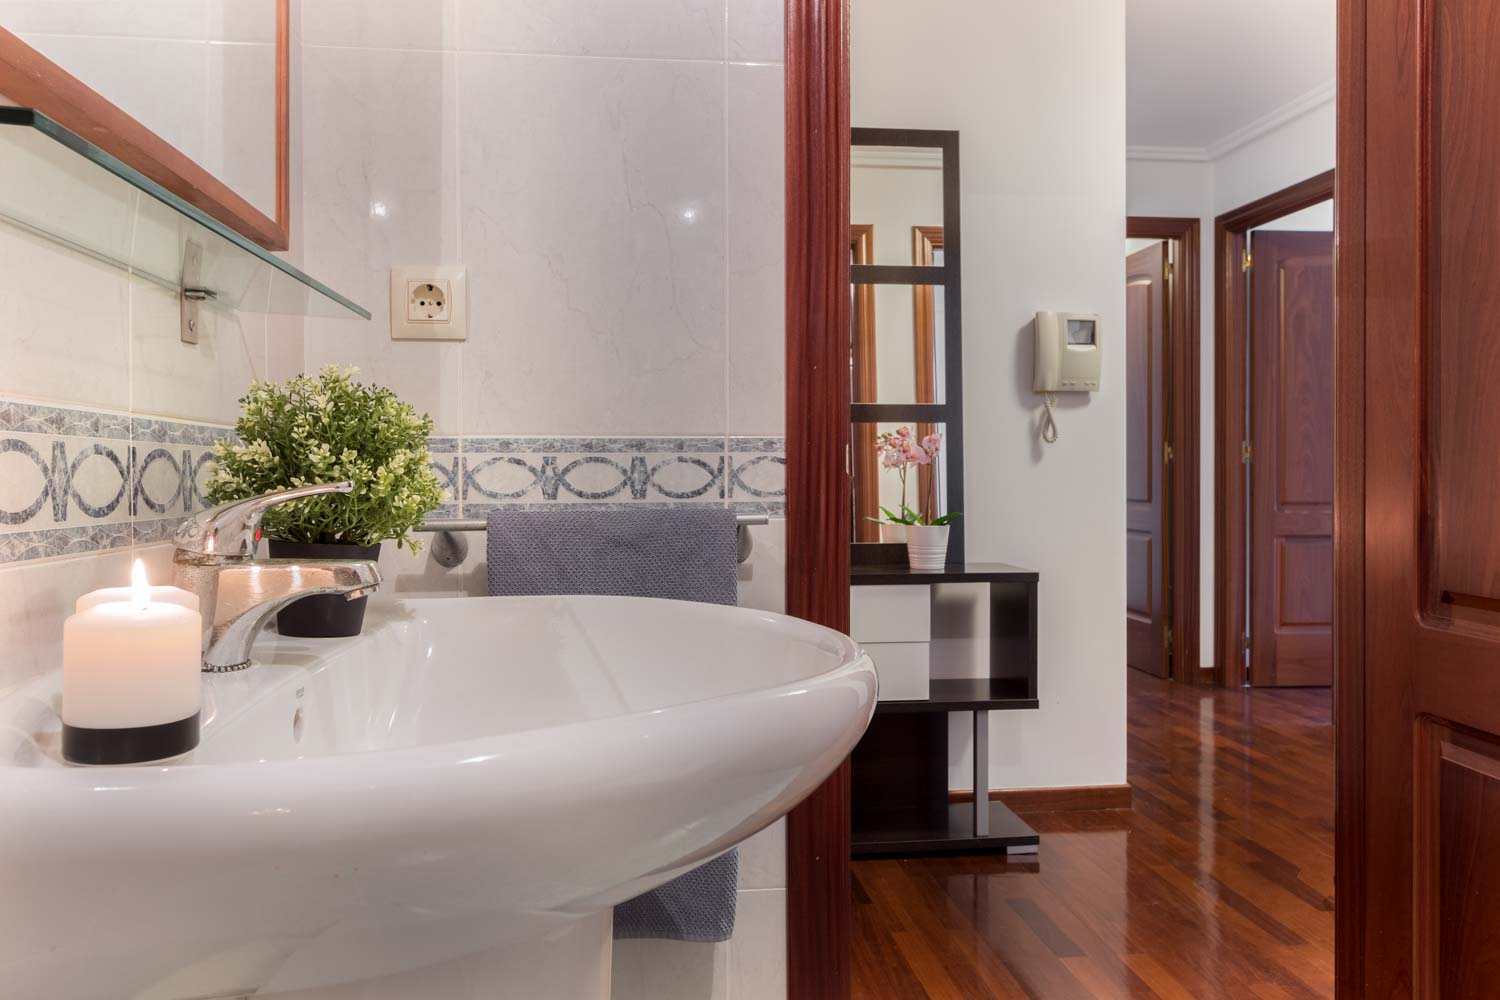 Cuarto de baño clásico blanco con cenefa azul y lavabo de pie_ puerta abierta hacia recibidor con suelos de parqué brillante_ Home Staging